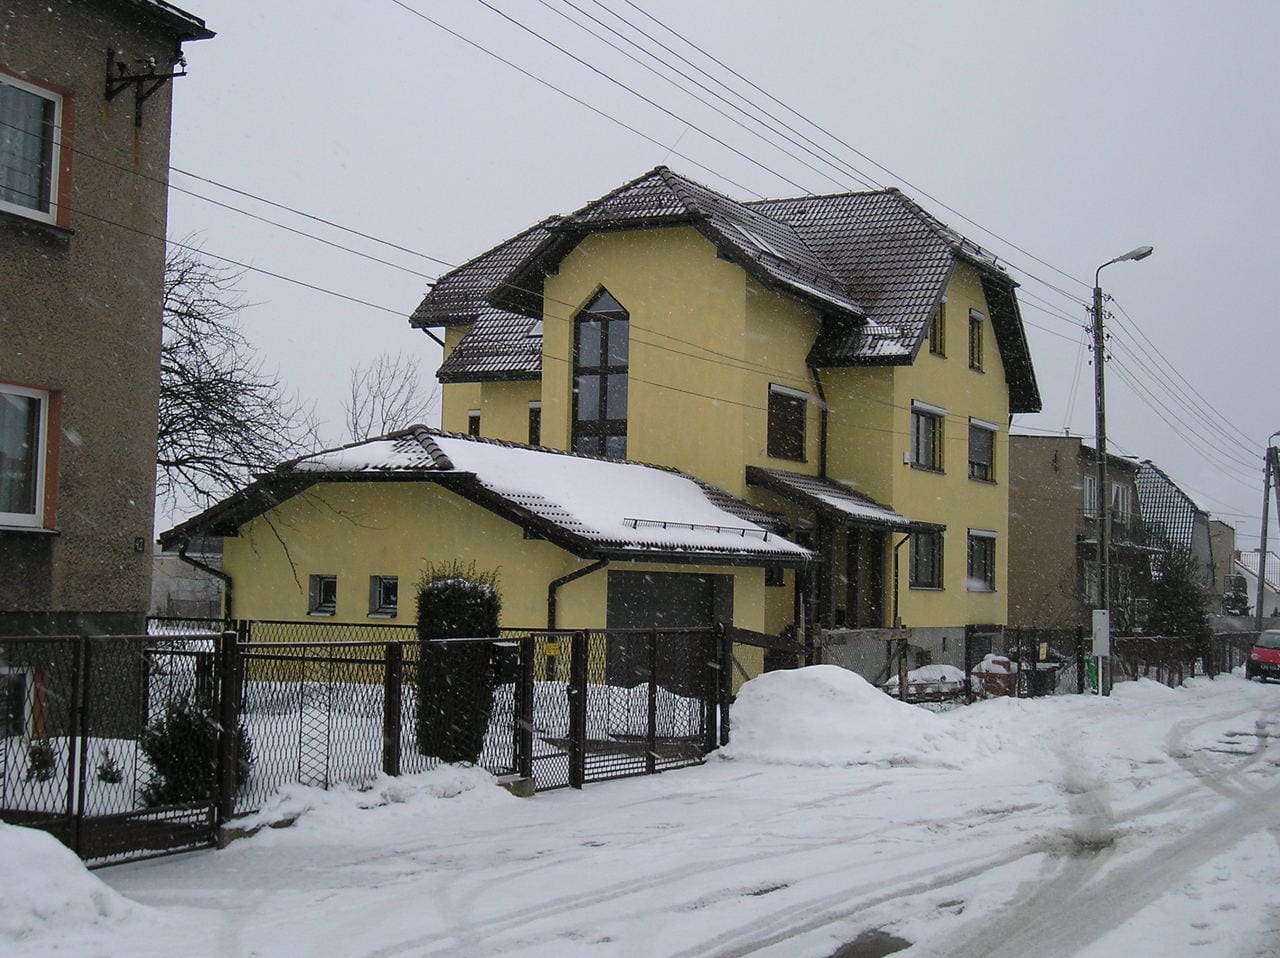 projekt rozbudowy budynku Gliwice